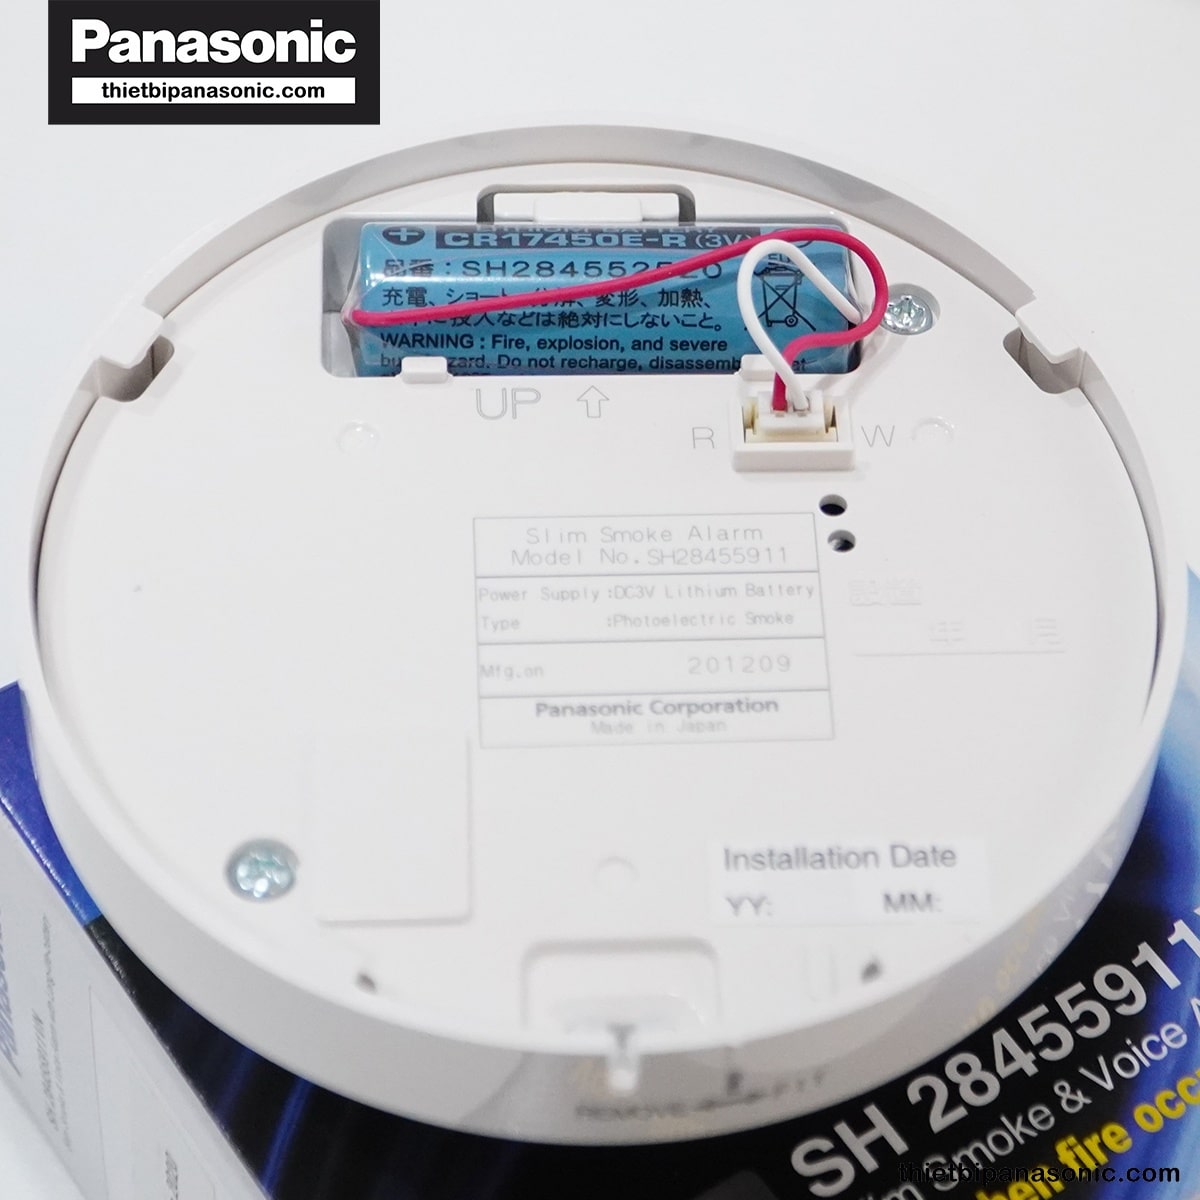 Mặt trên của đầu báo cháy Panasonic SH28455911 với pin có thời gian sử dụng lên đến 10 năm